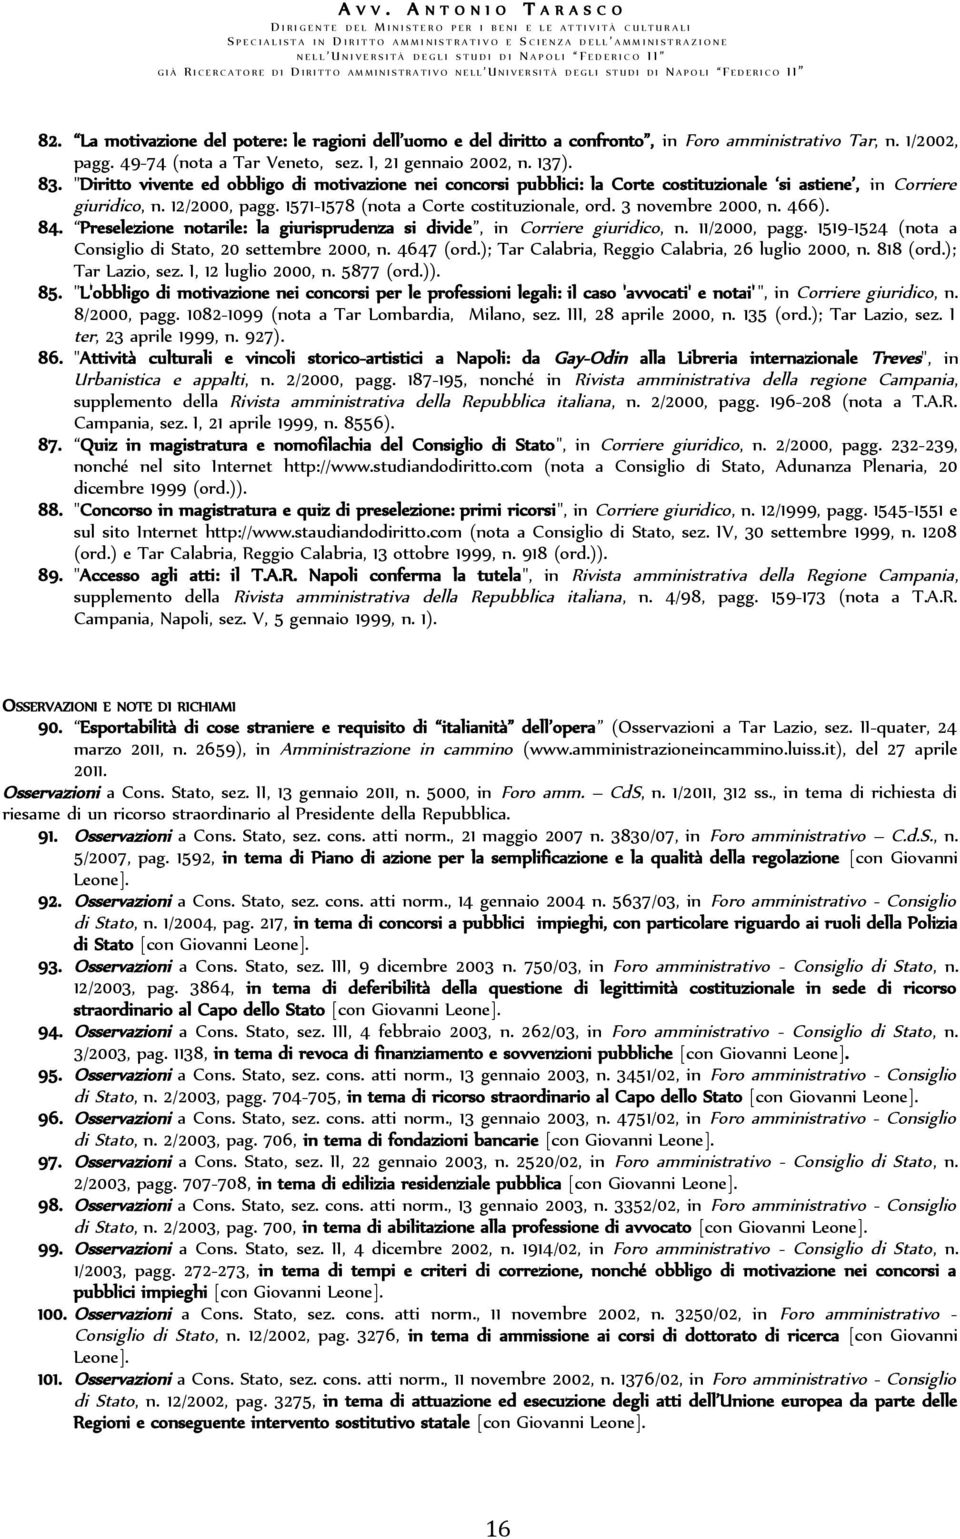 3 novembre 2000, n. 466). 84. Preselezione notarile: la giurisprudenza si divide, in Corriere giuridico, n. 11/2000, pagg. 1519-1524 (nota a Consiglio di Stato, 20 settembre 2000, n. 4647 (ord.